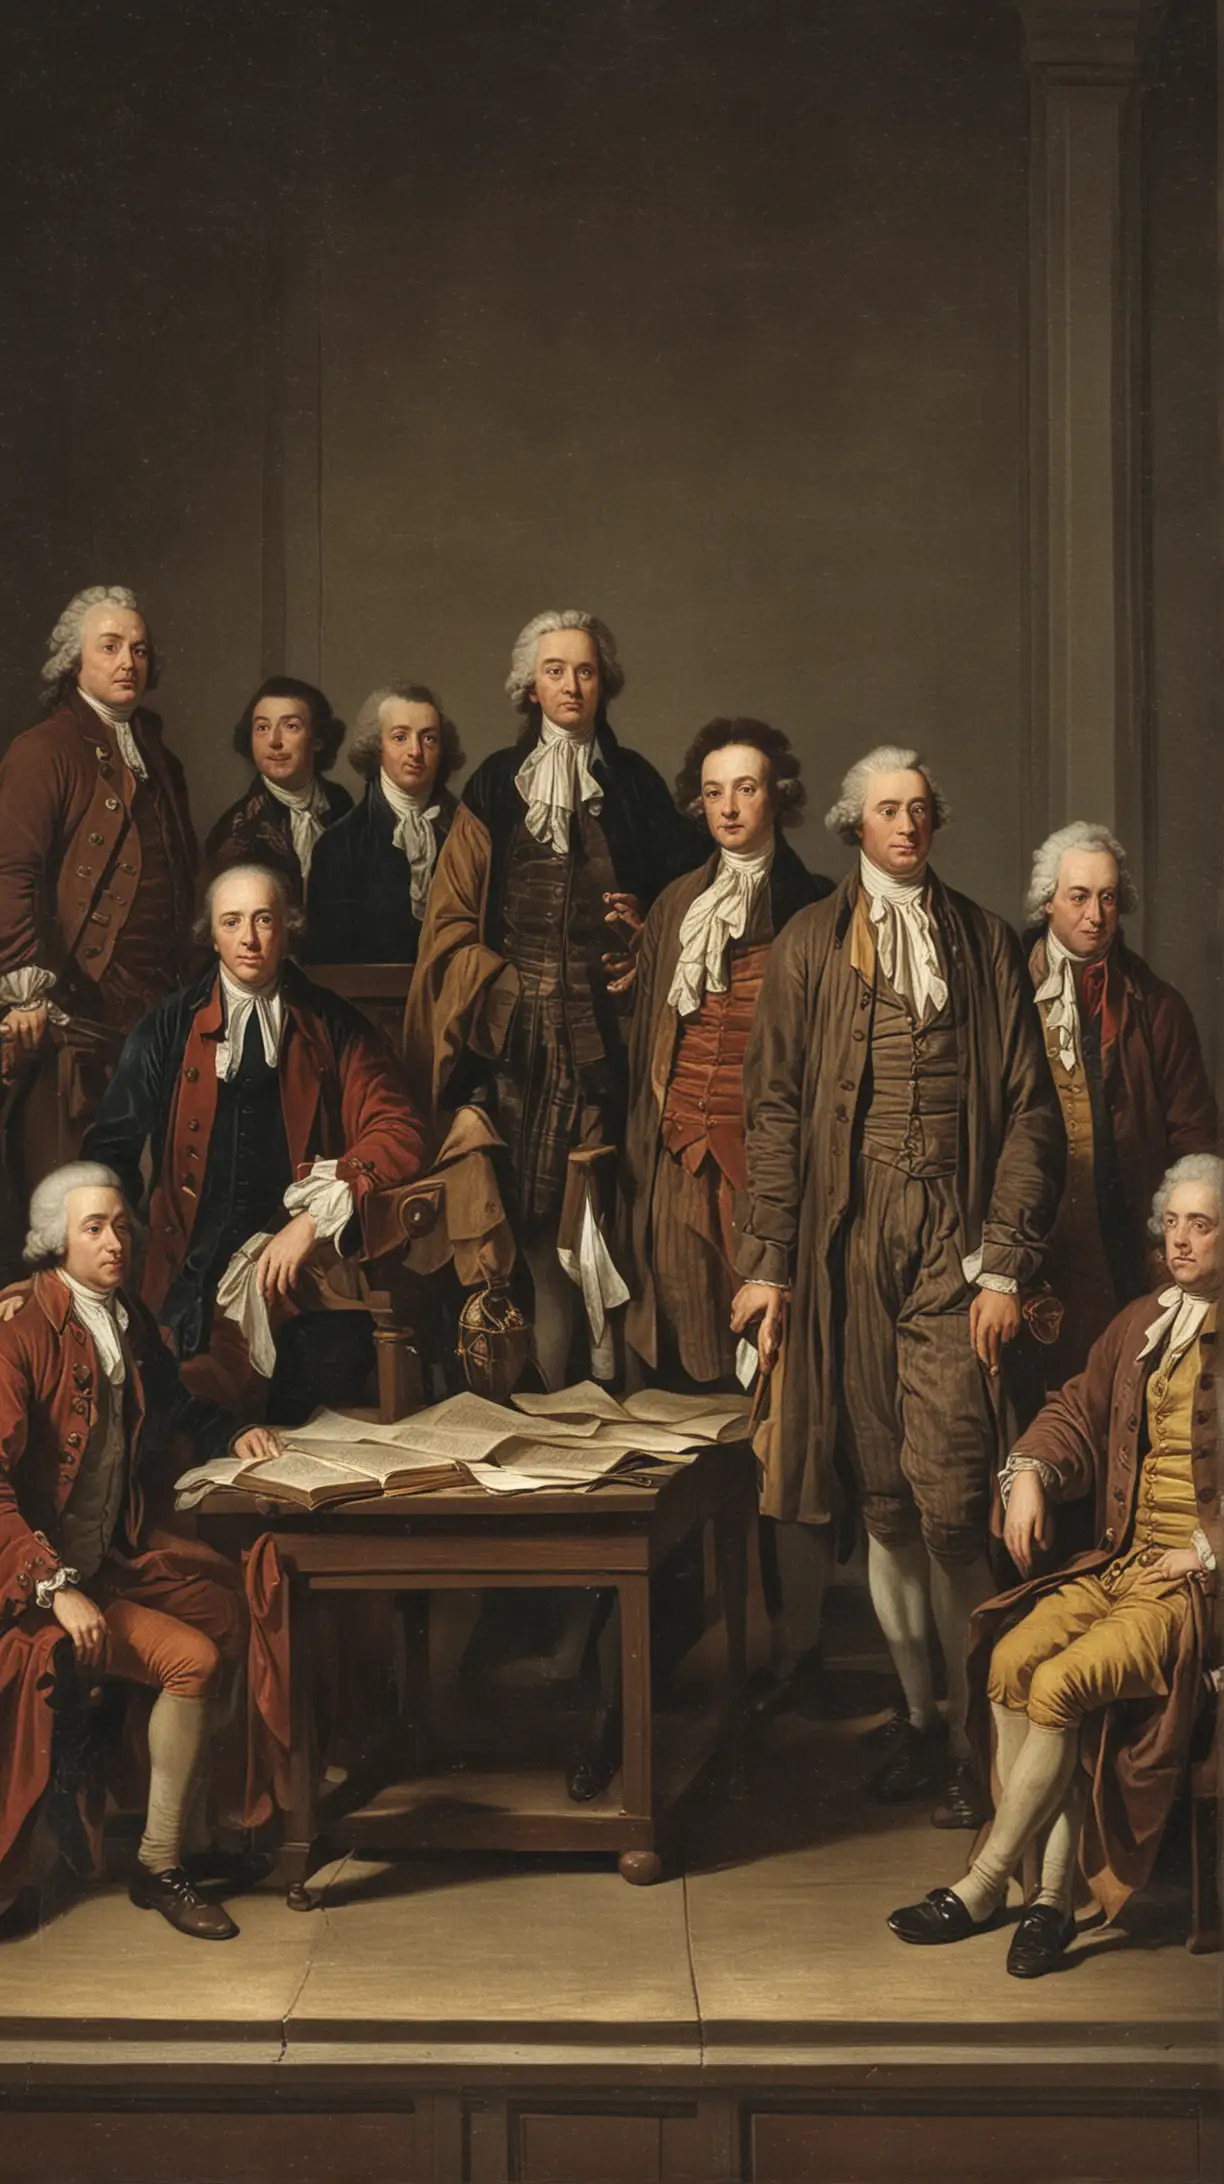 1781 jury

